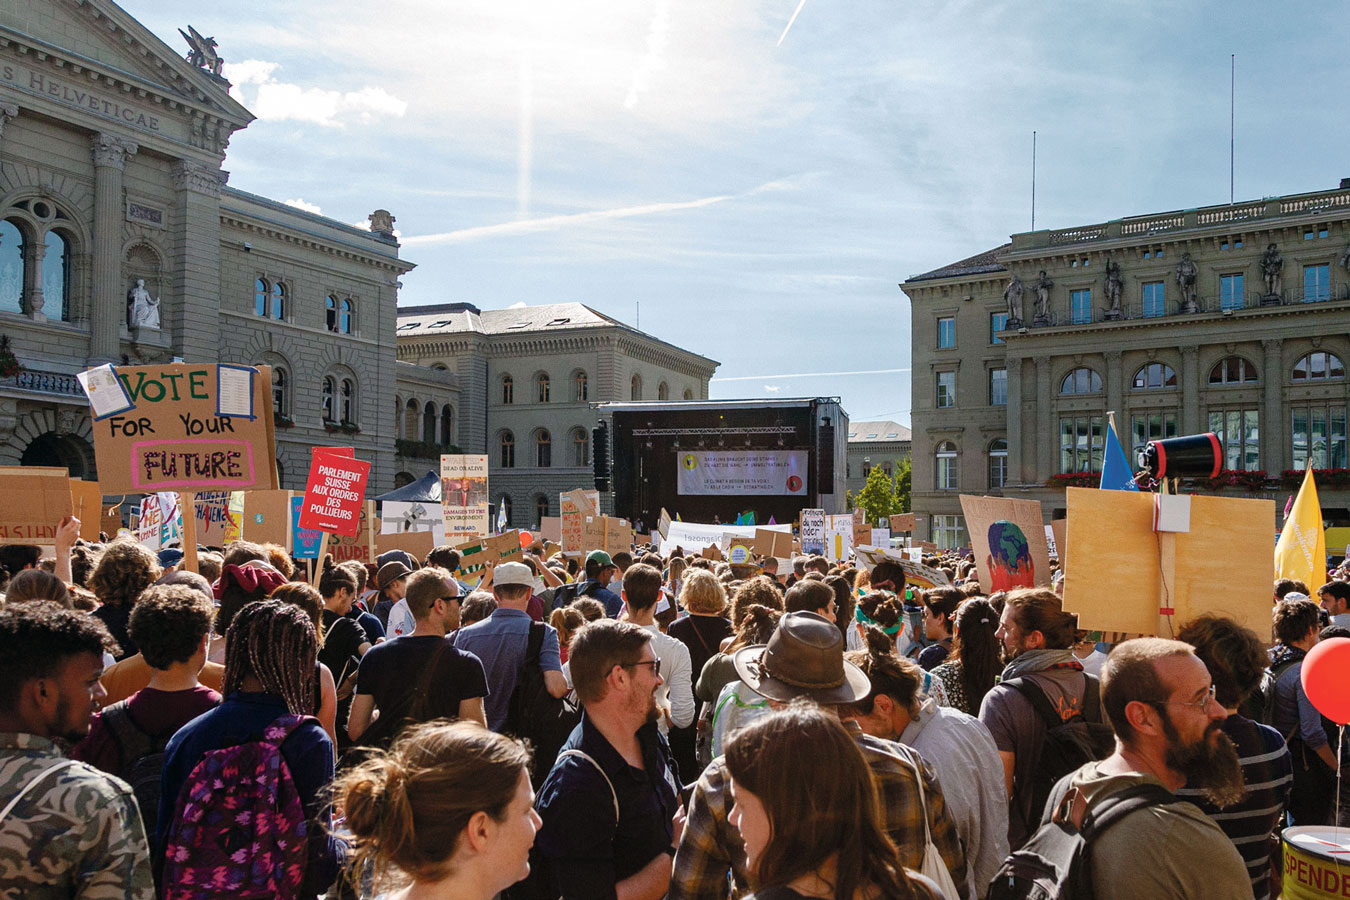 Marche pour le changement, Berne 28 septembre 2019